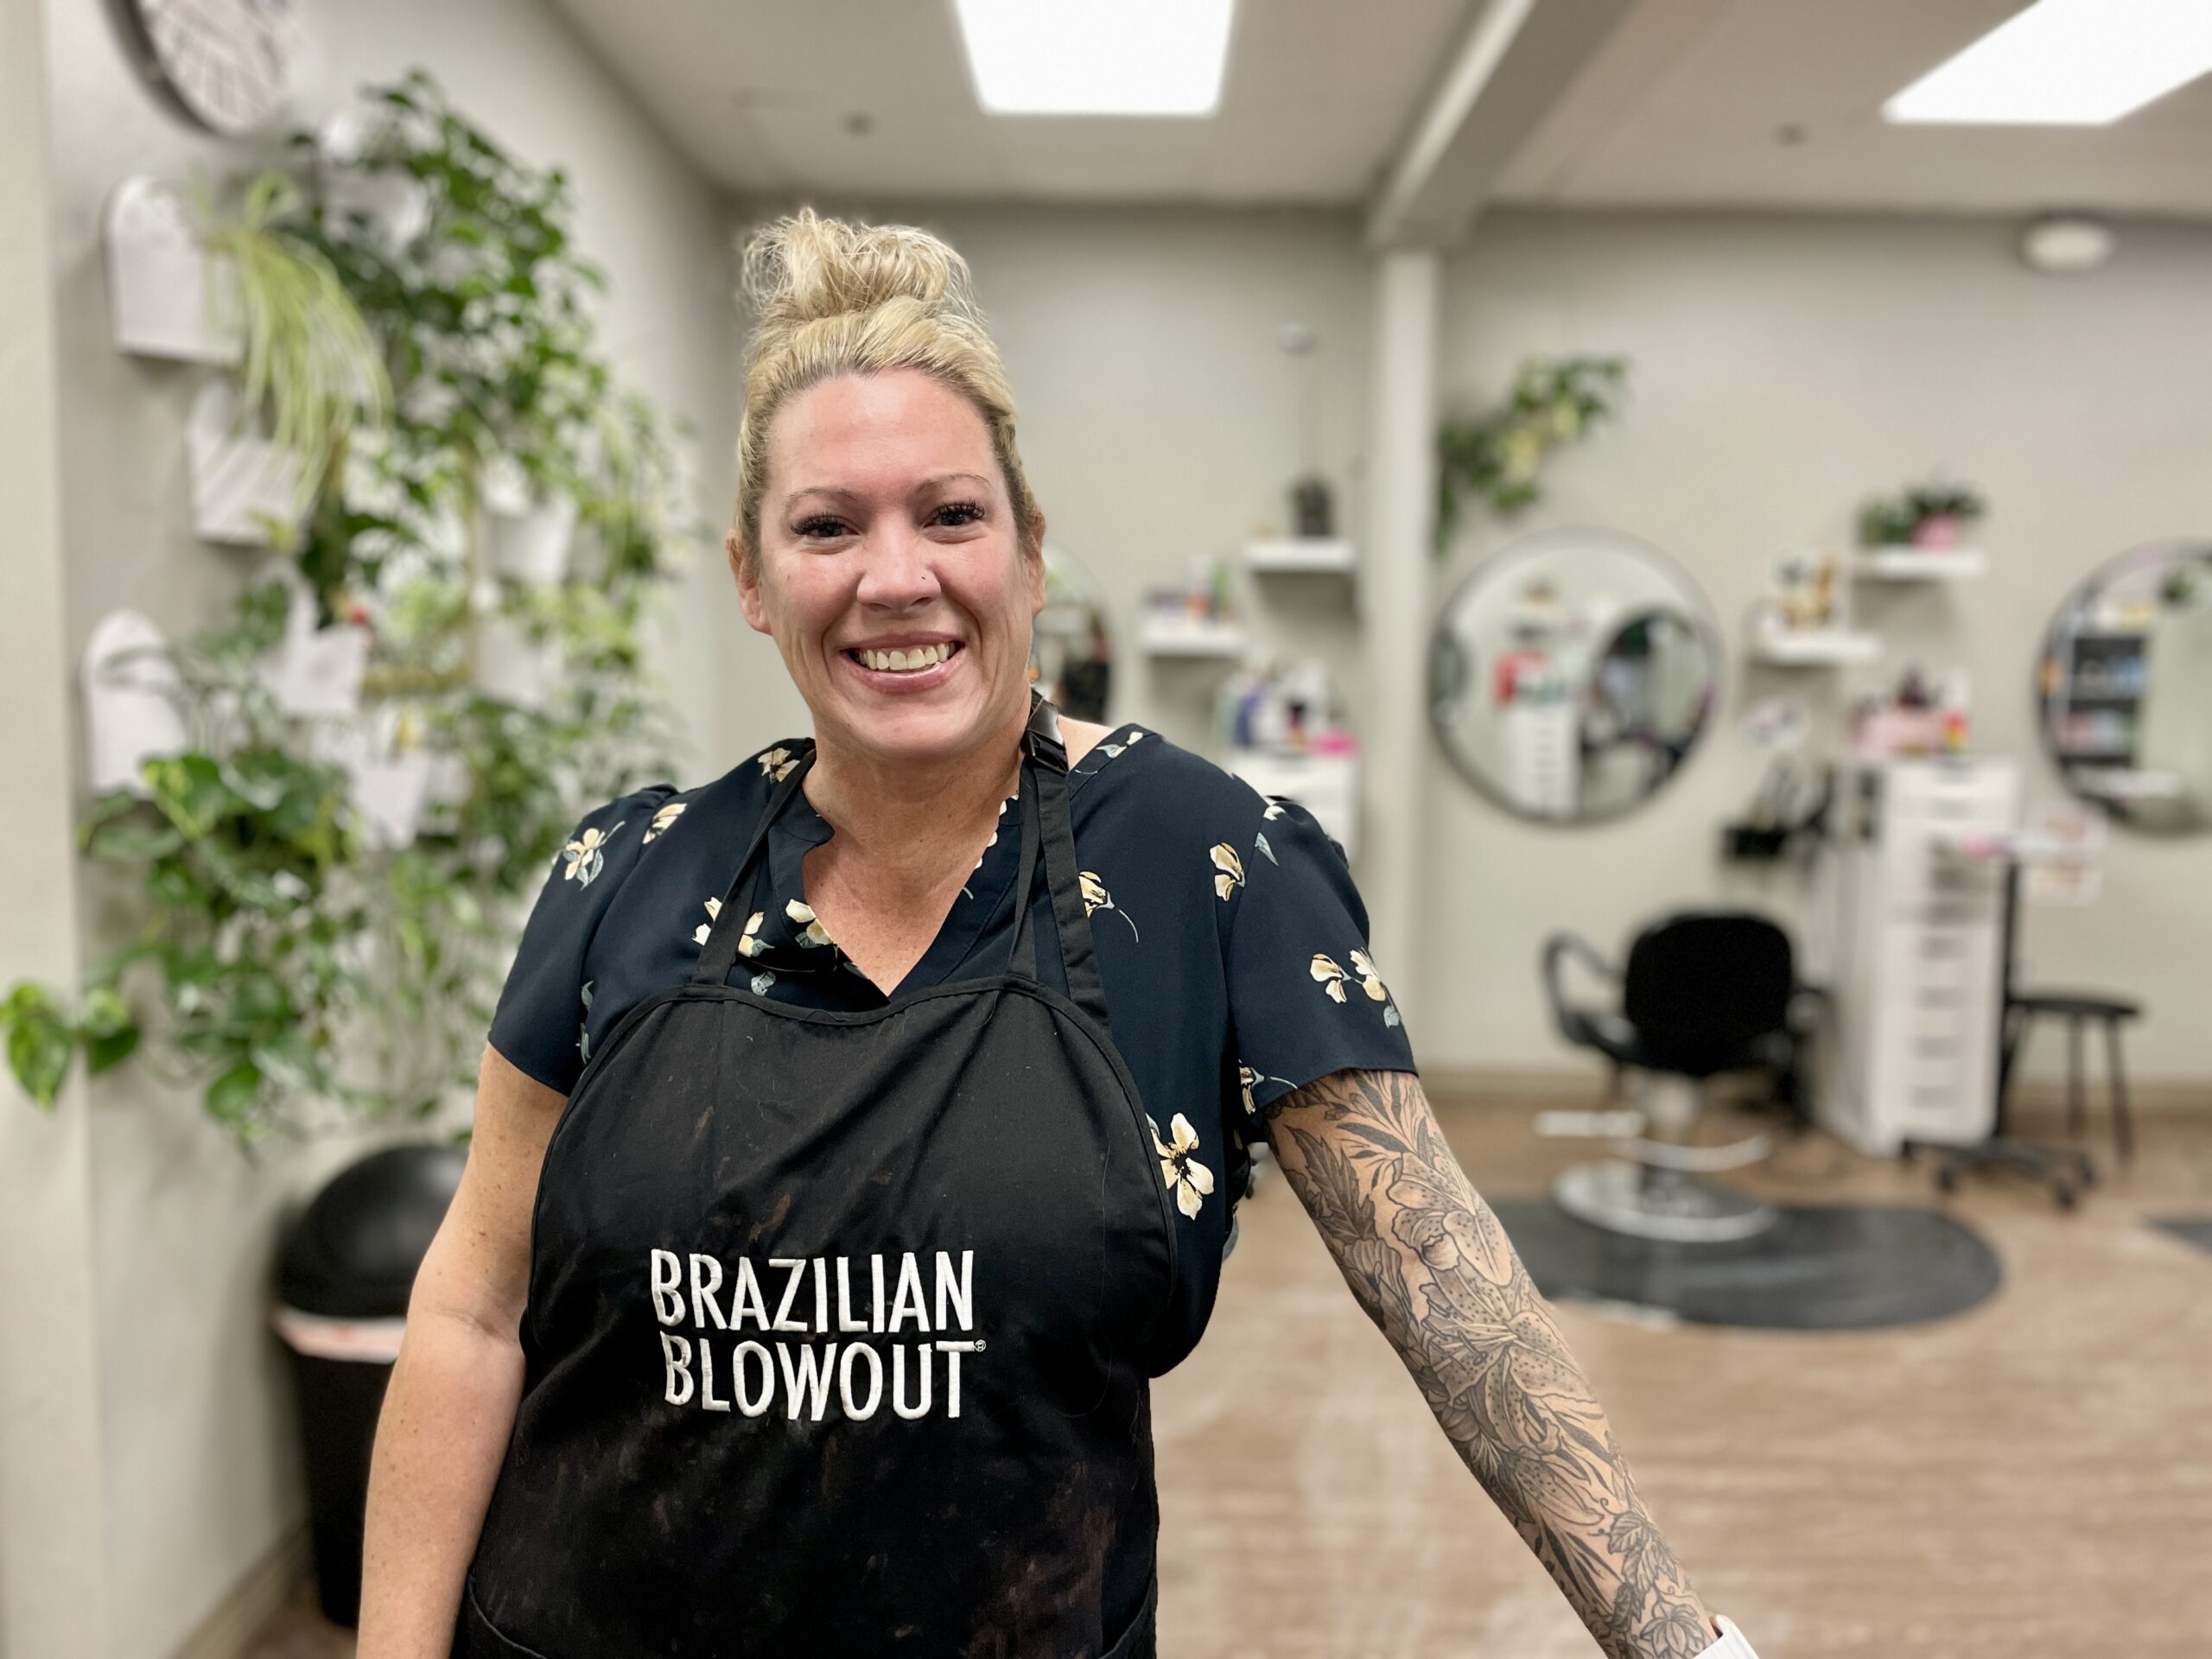 a woman at a hair salon, wearing an apron that says "Brazilian Blowout"